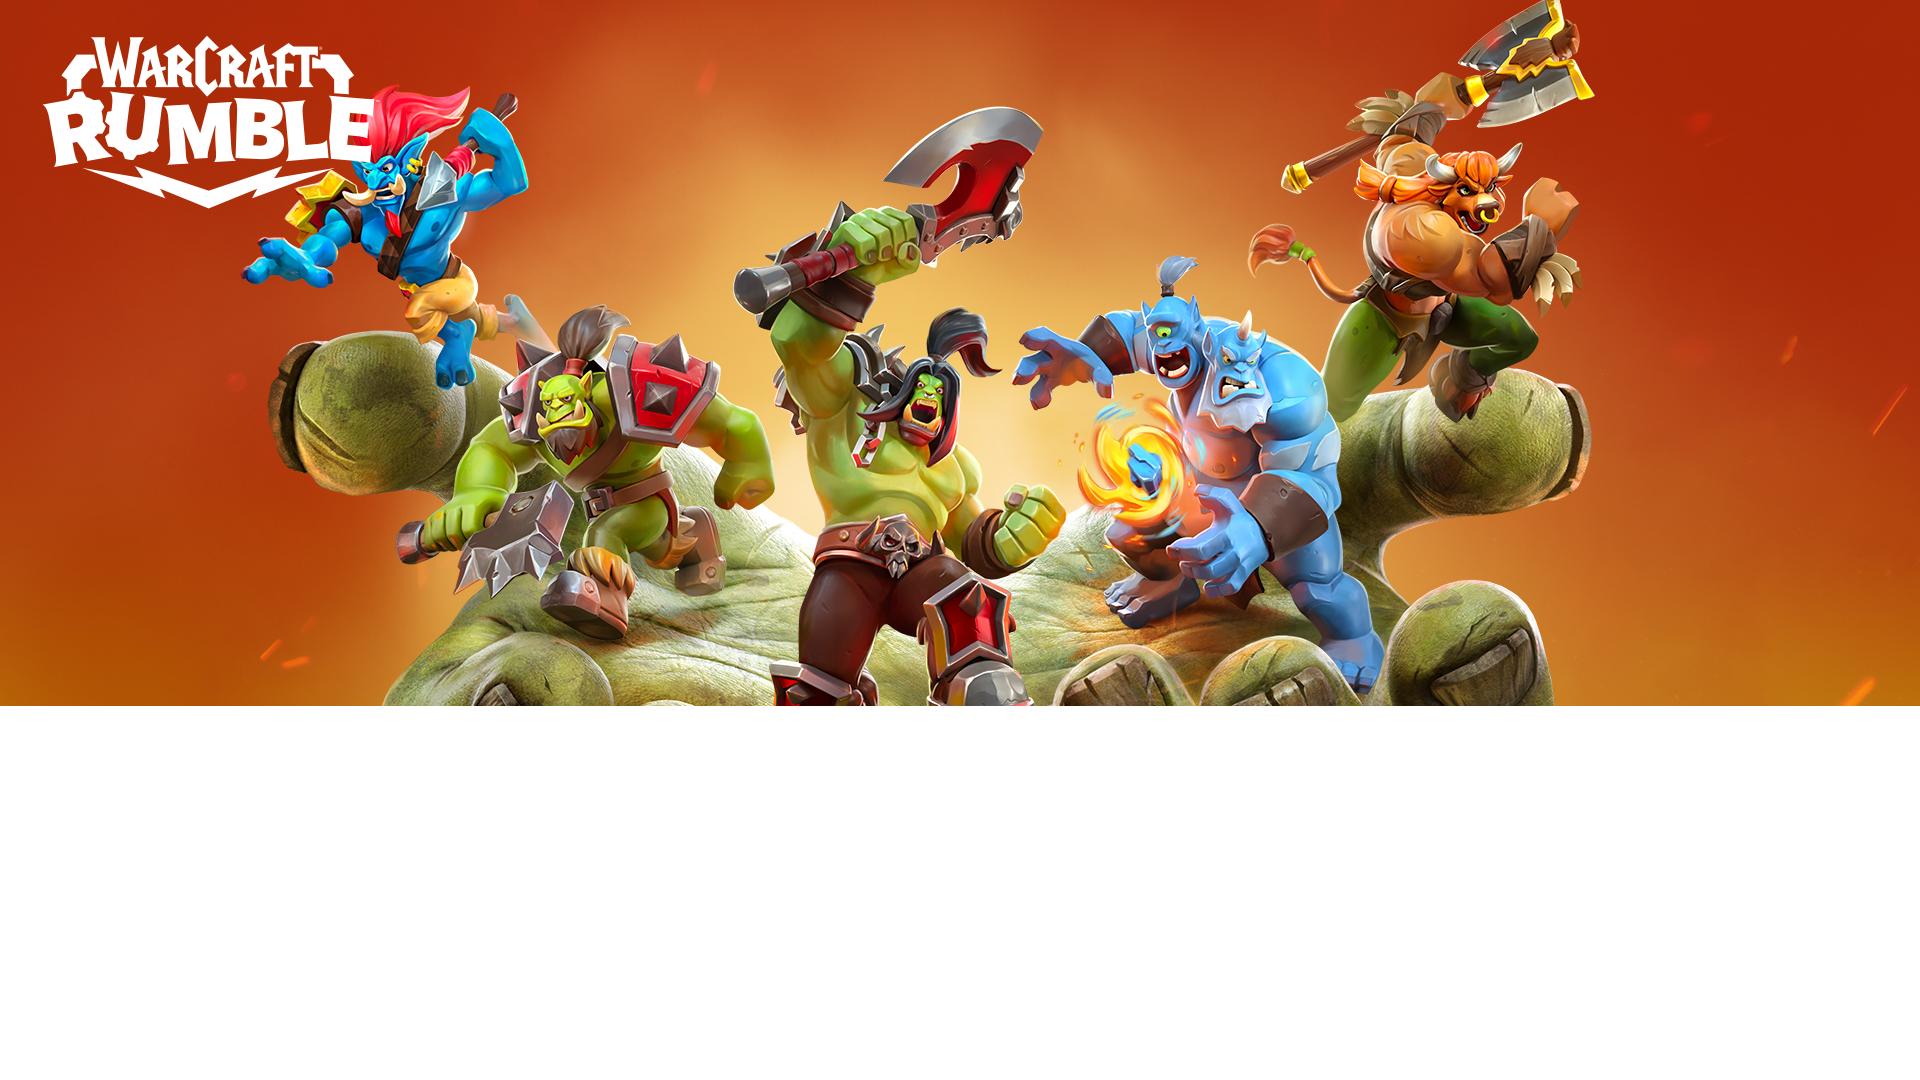 Warcraft Rumble será lançado junto com a BlizzCon em novembro